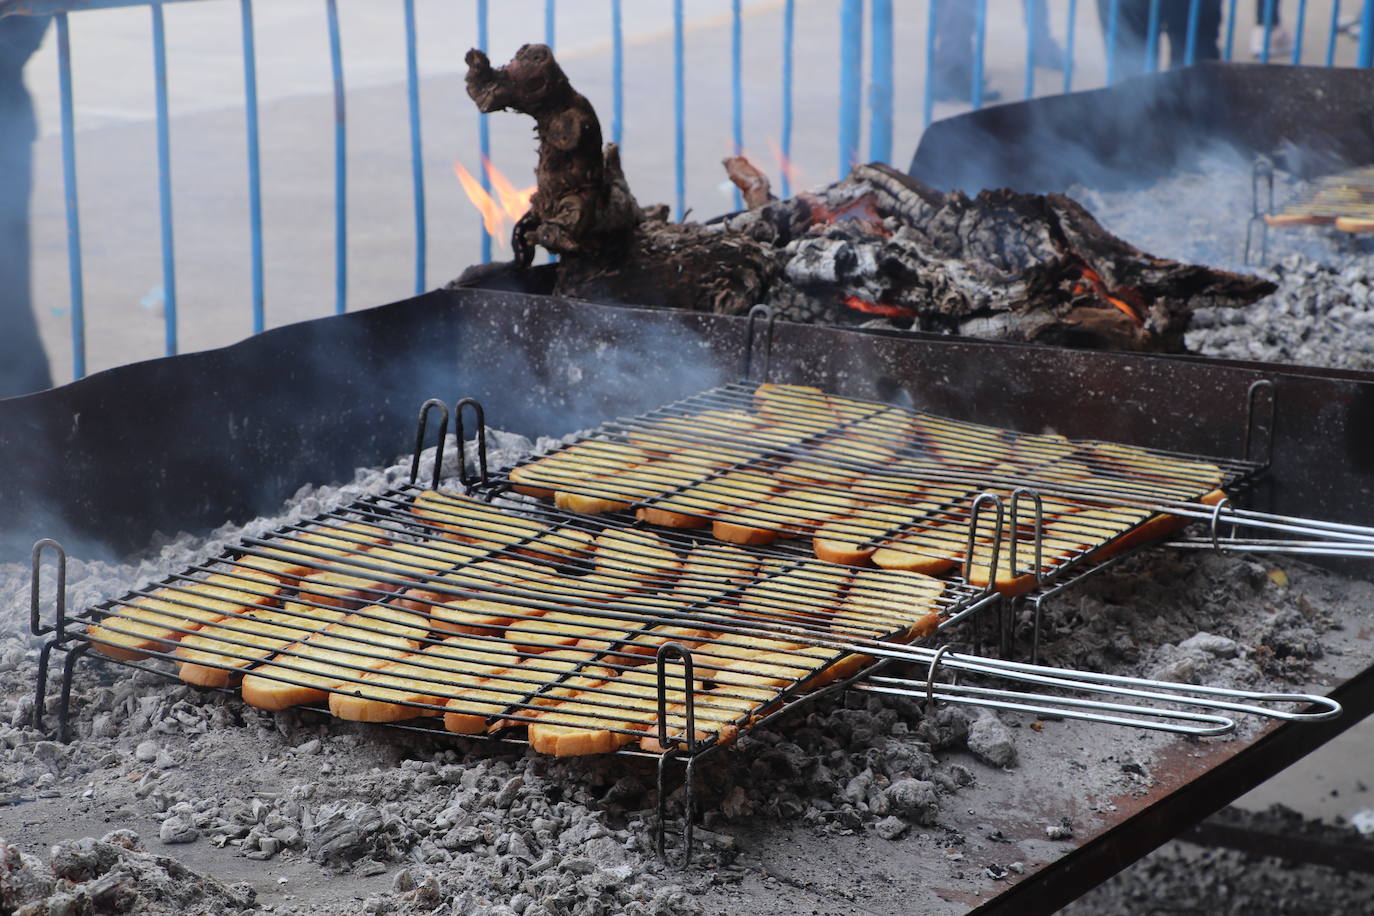 Fotos: Fiesta de la Pringada en Arnedo, toda una tradición